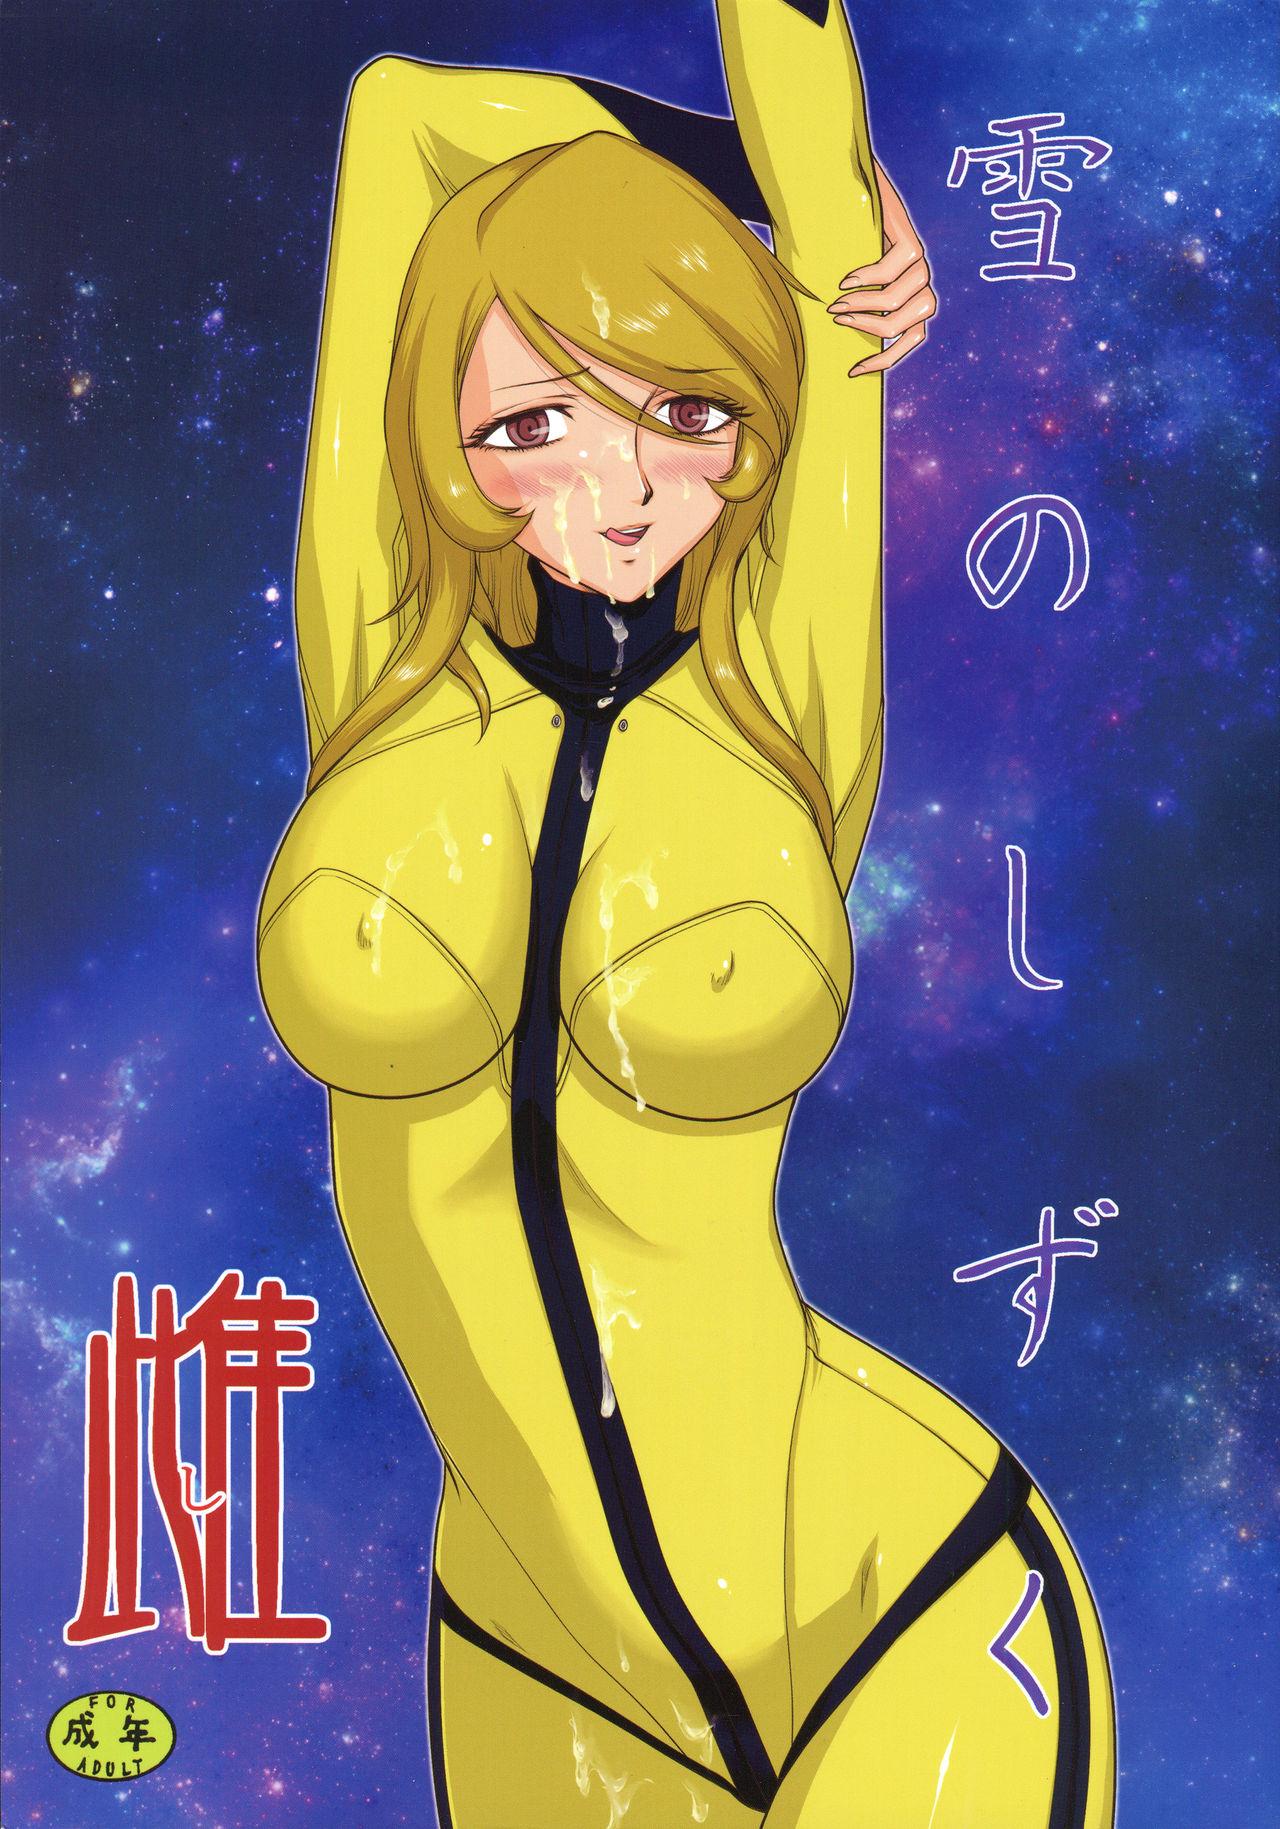 Rica Yuki no Shizuku Mesu - Space battleship yamato Space battleship yamato 2199 Teen Porn - Page 1